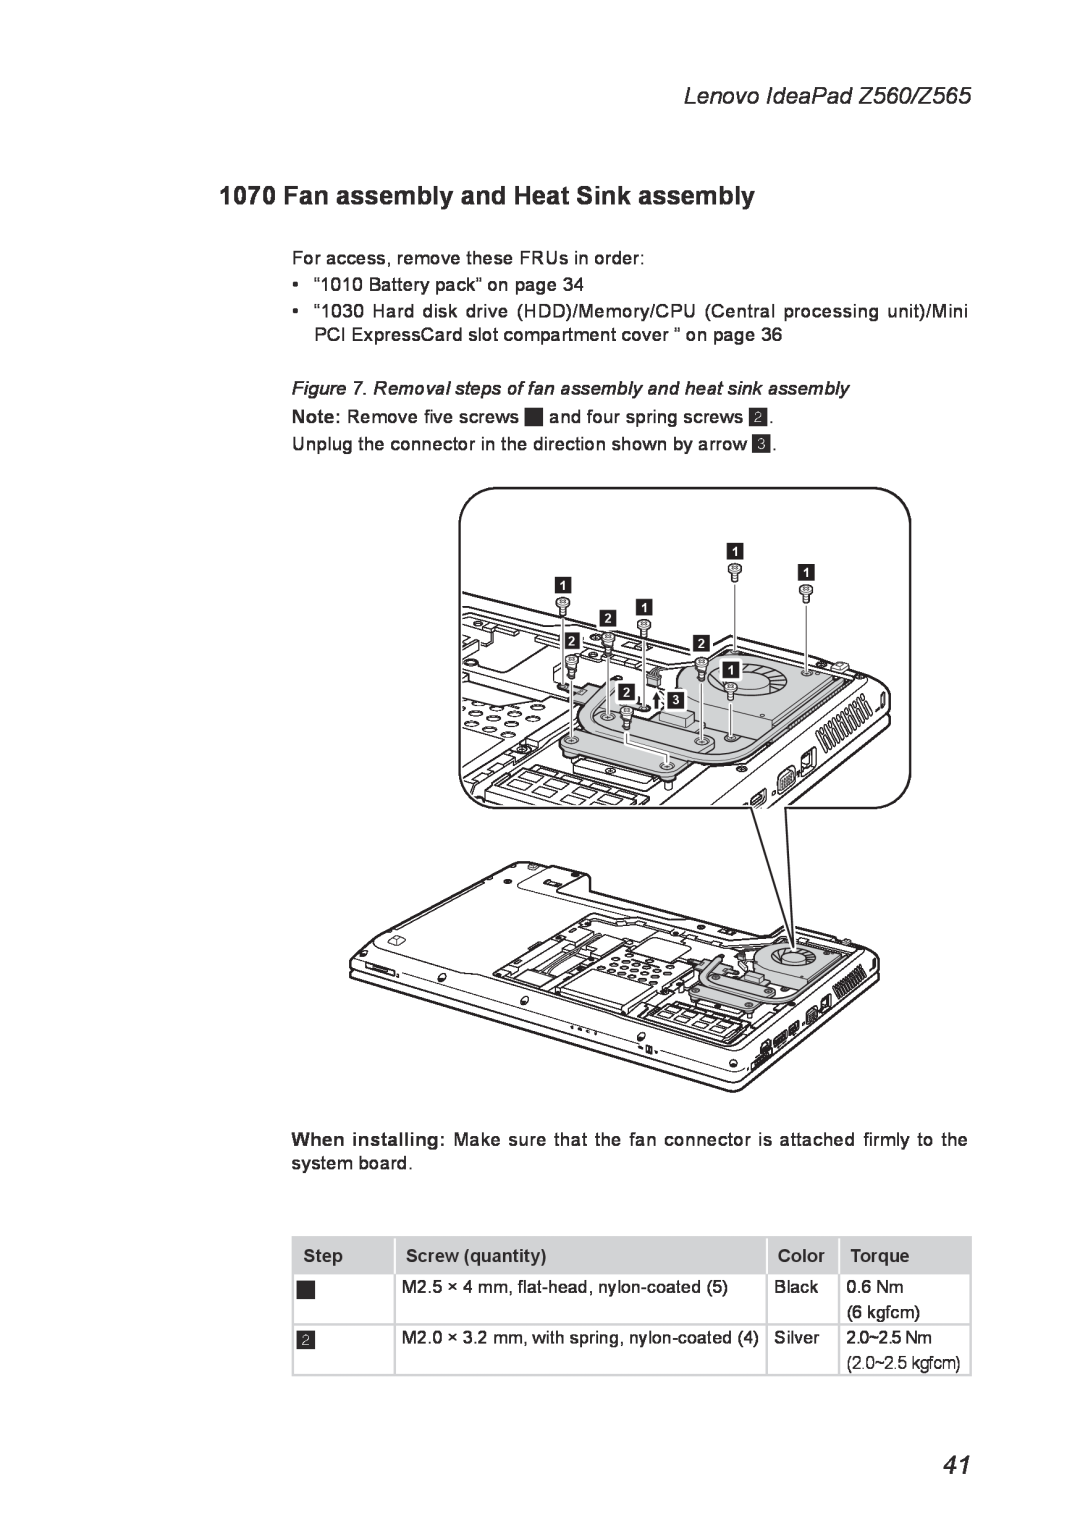 Lenovo Z560, Z565 manual Fan assembly and Heat Sink assembly, Removal steps of fan assembly and heat sink assembly 